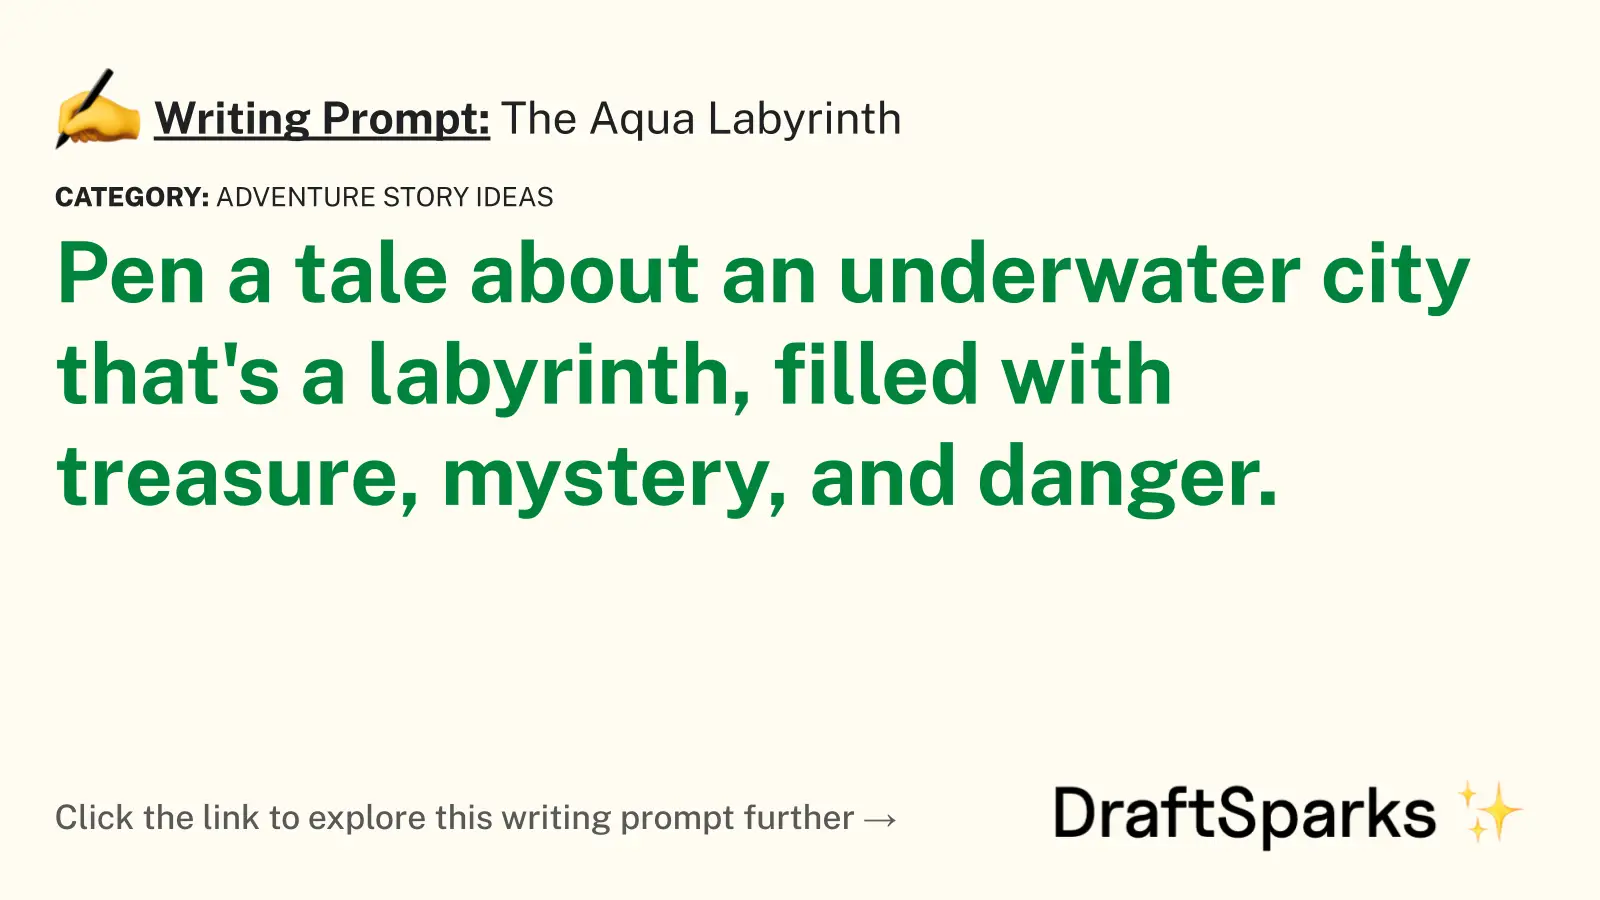 The Aqua Labyrinth